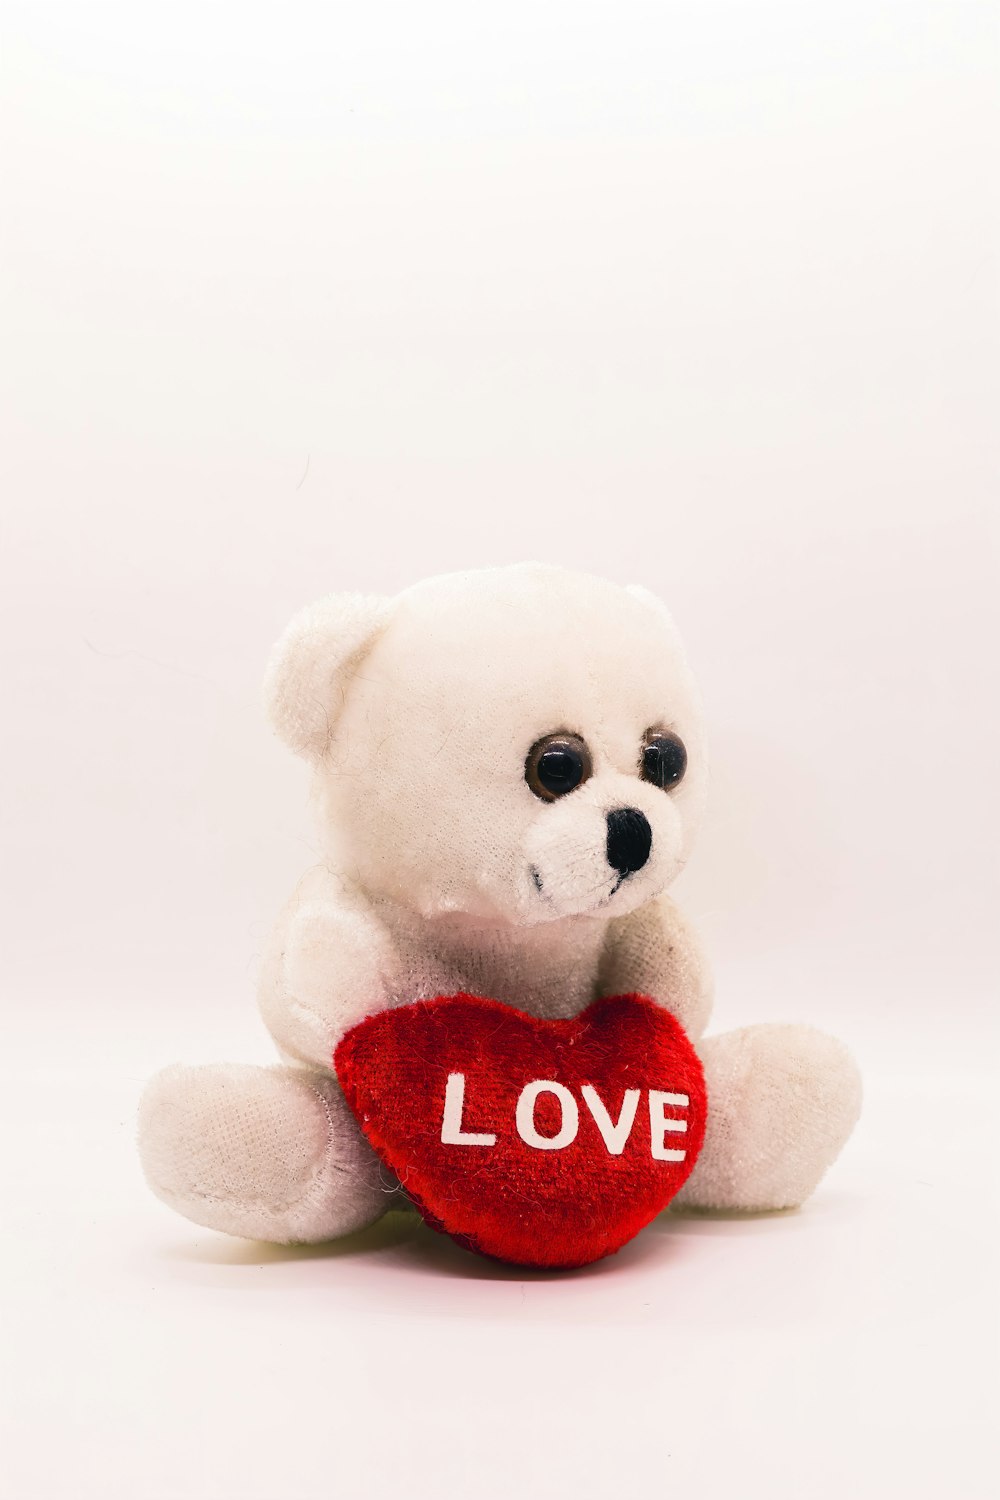 Ein weißer Teddybär mit rotem Herzen